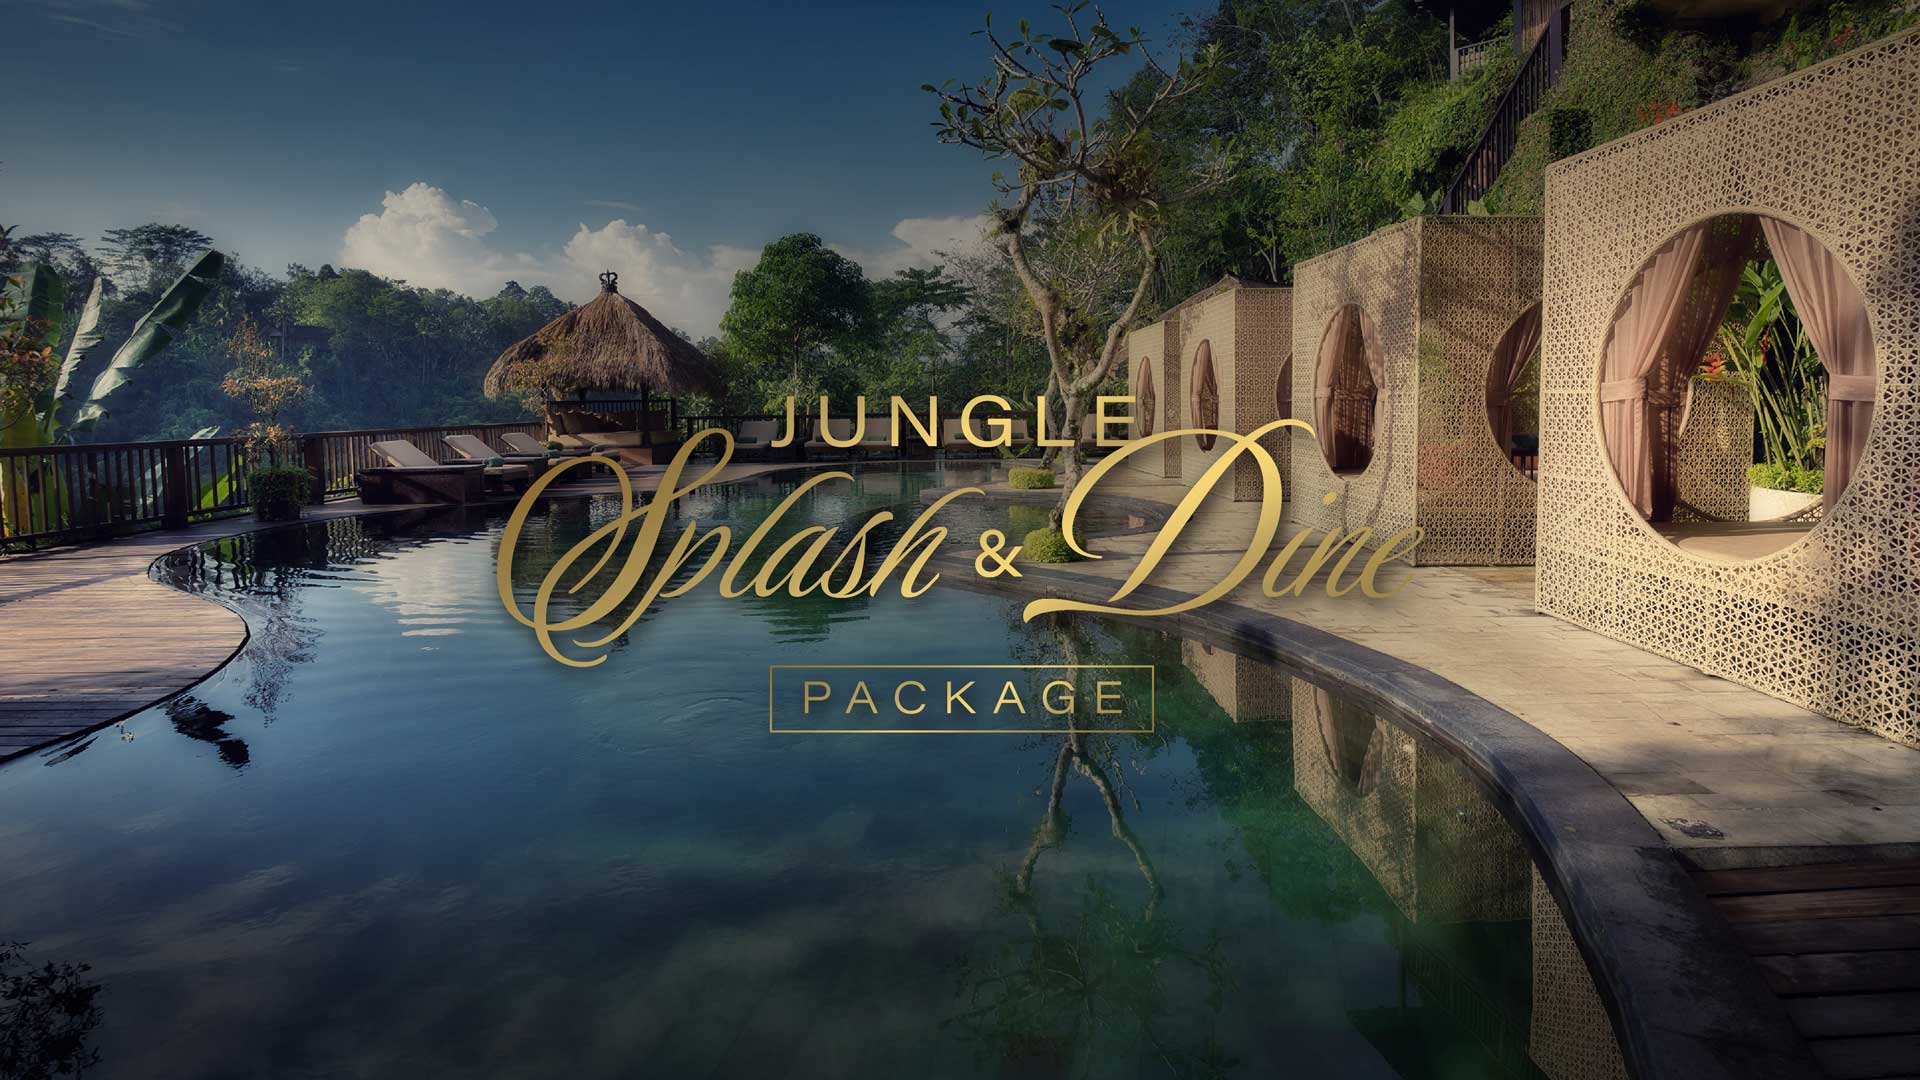 Jungle Splash & Dine